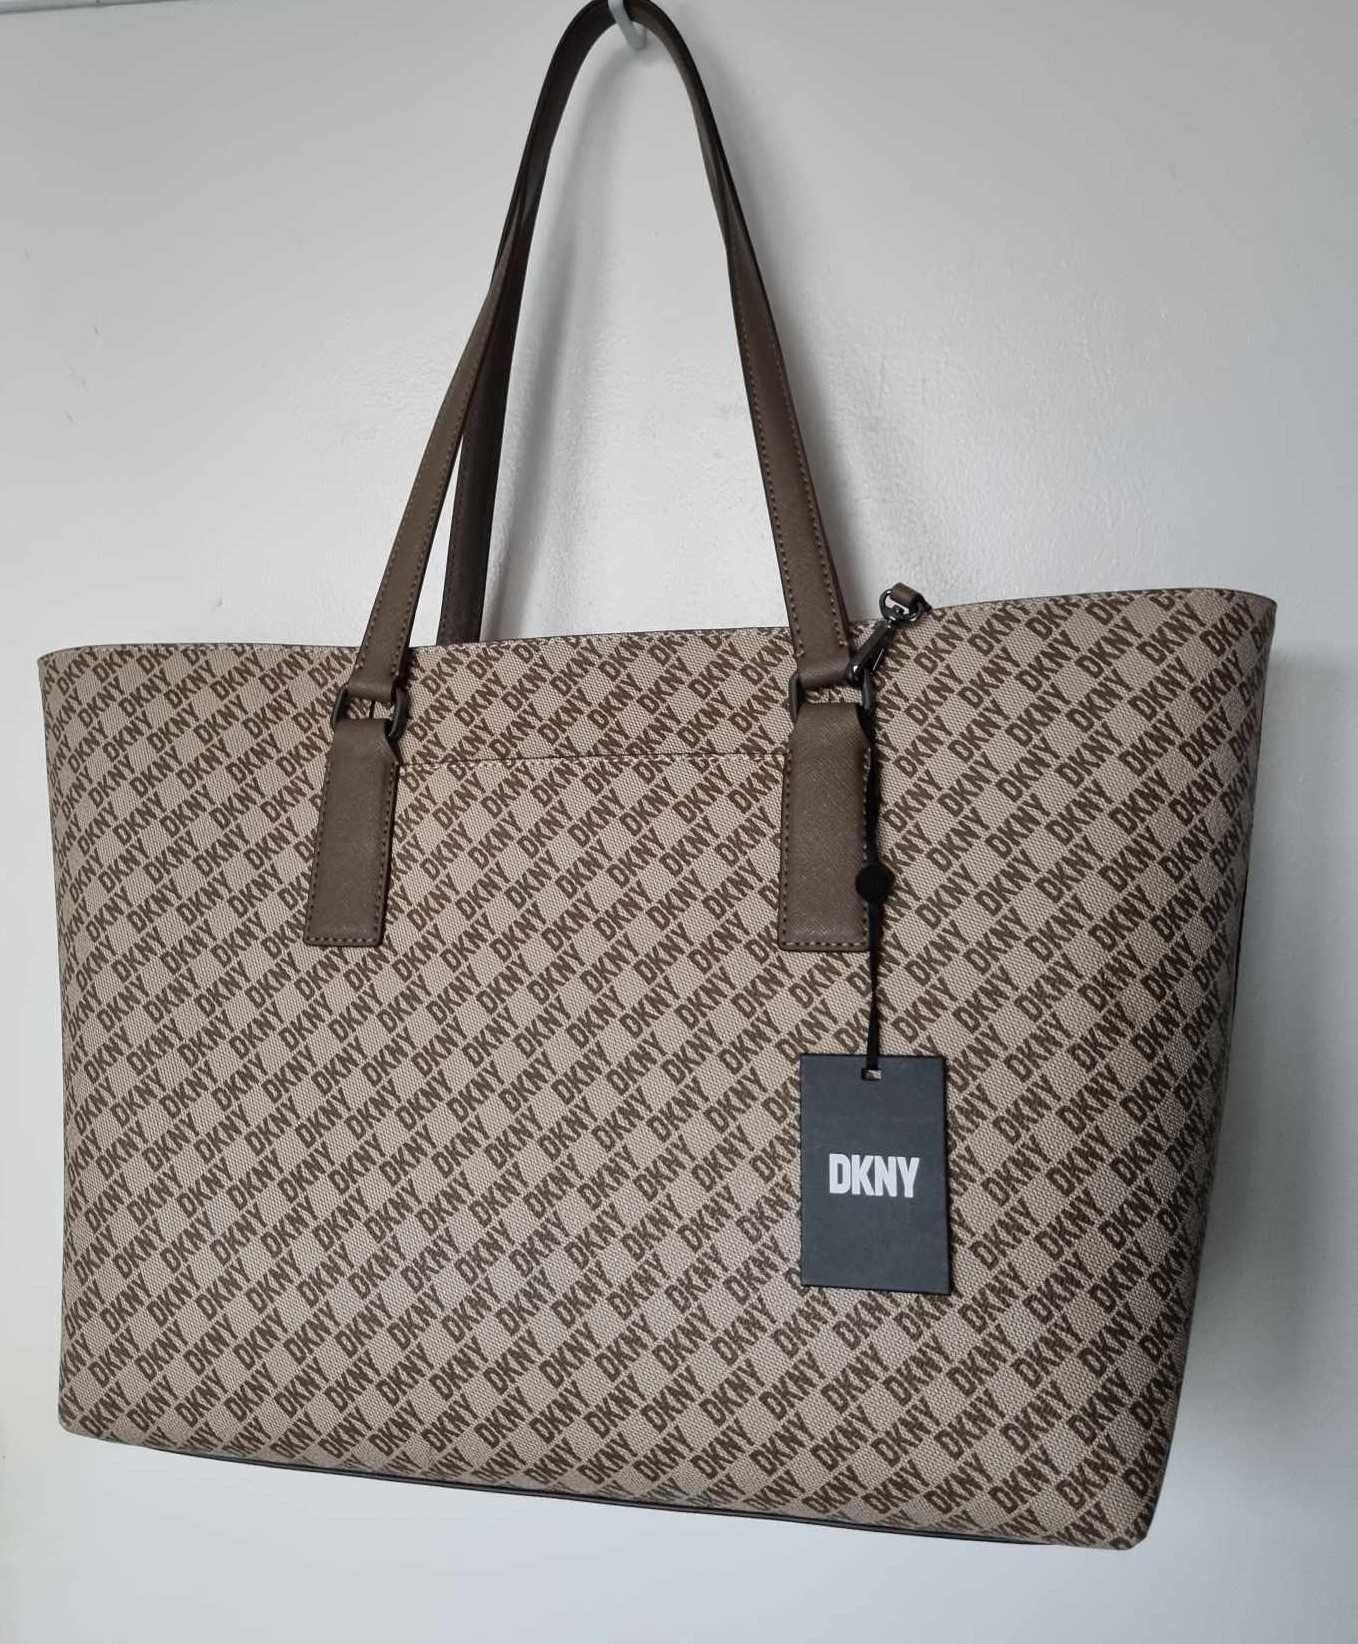 Дамски чанти оригинални на DKNY с етикет